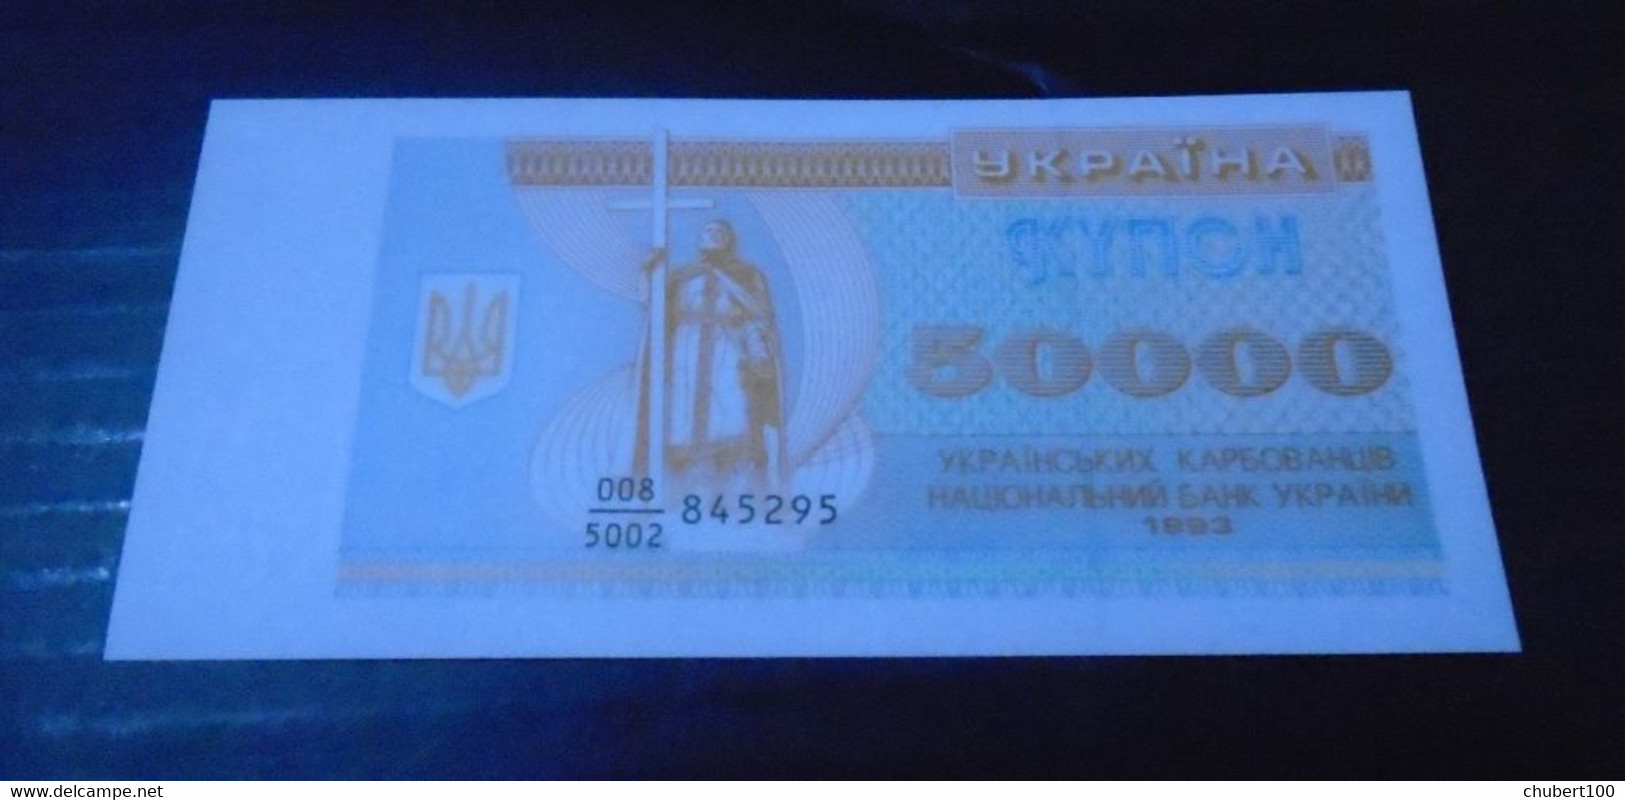 UKRAINE, P 94b + 95b + 96a + 114b , 10000 20000 50000 100 Hryvni , 1993 1994 1995, UNC + Used , 4 Notes - Ukraine